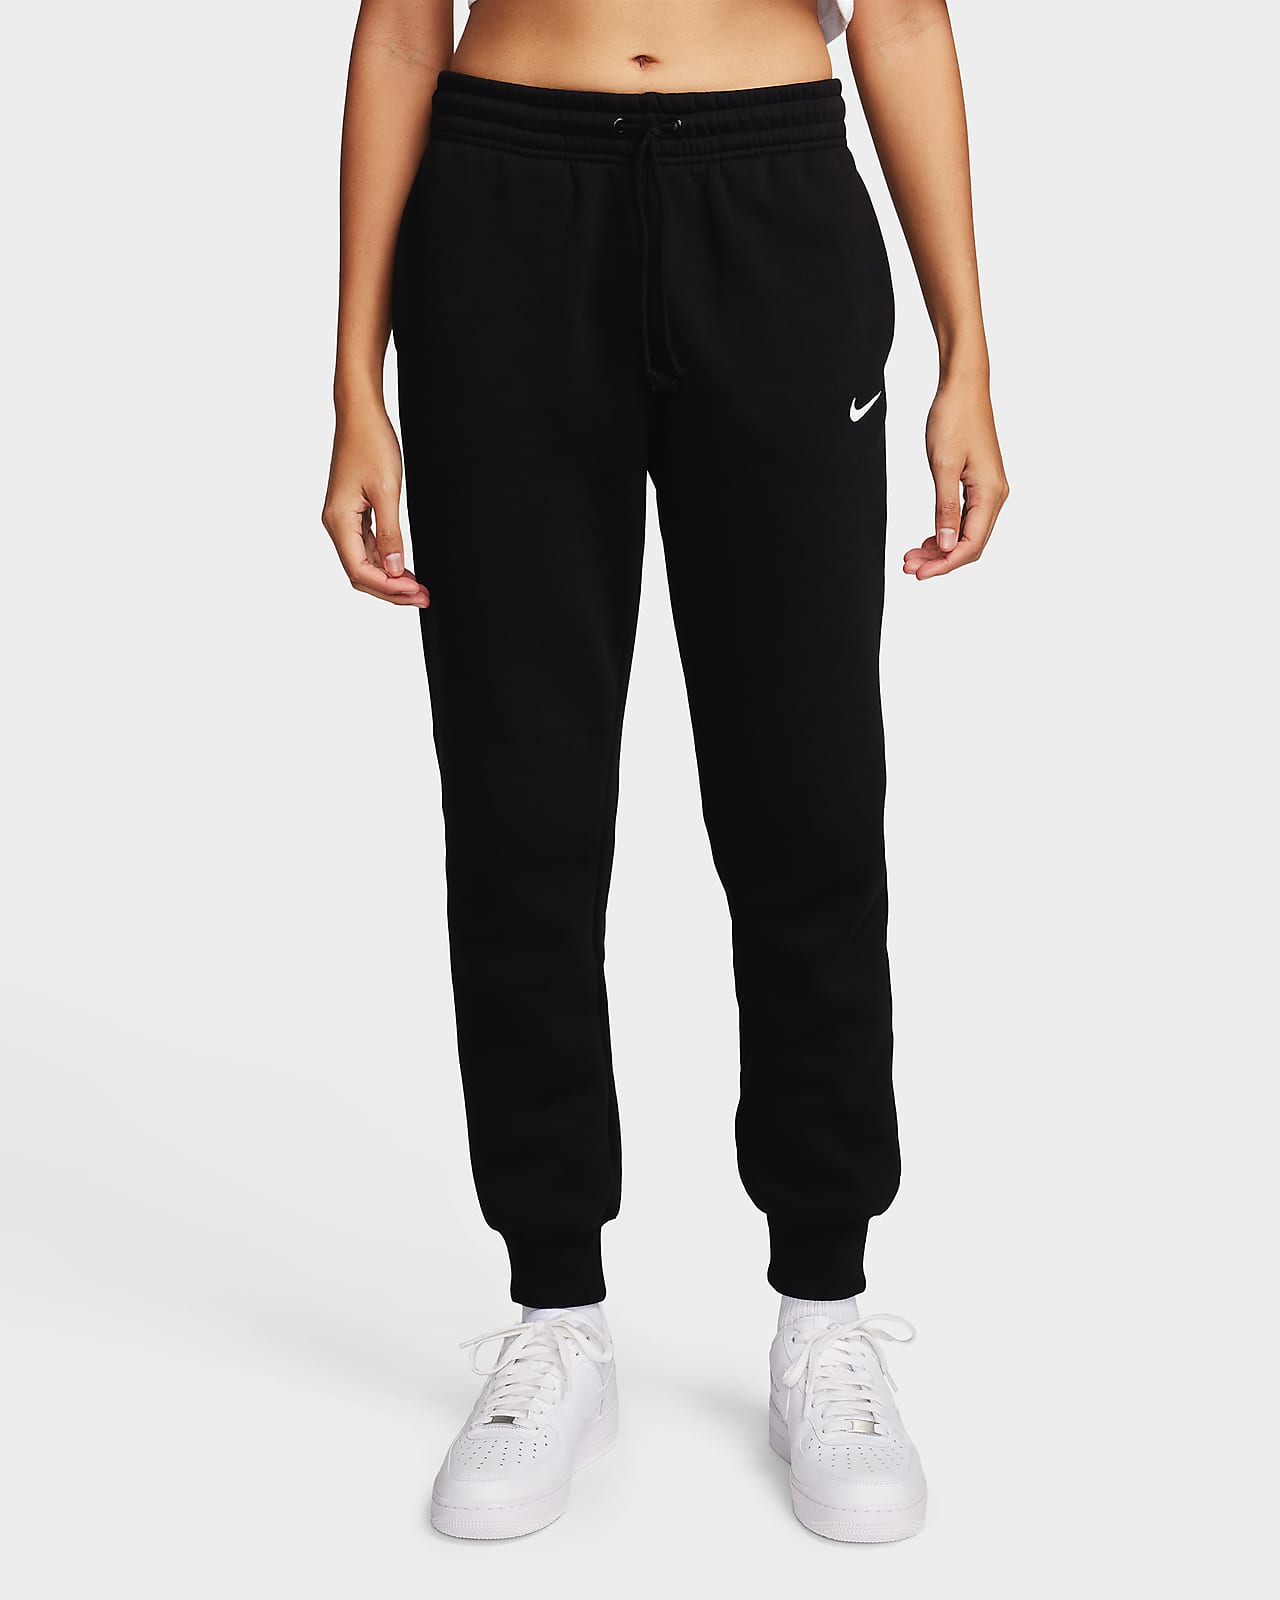 Dámské tepláky Nike Sportswear Phoenix Fleece se středně vysokým pasem